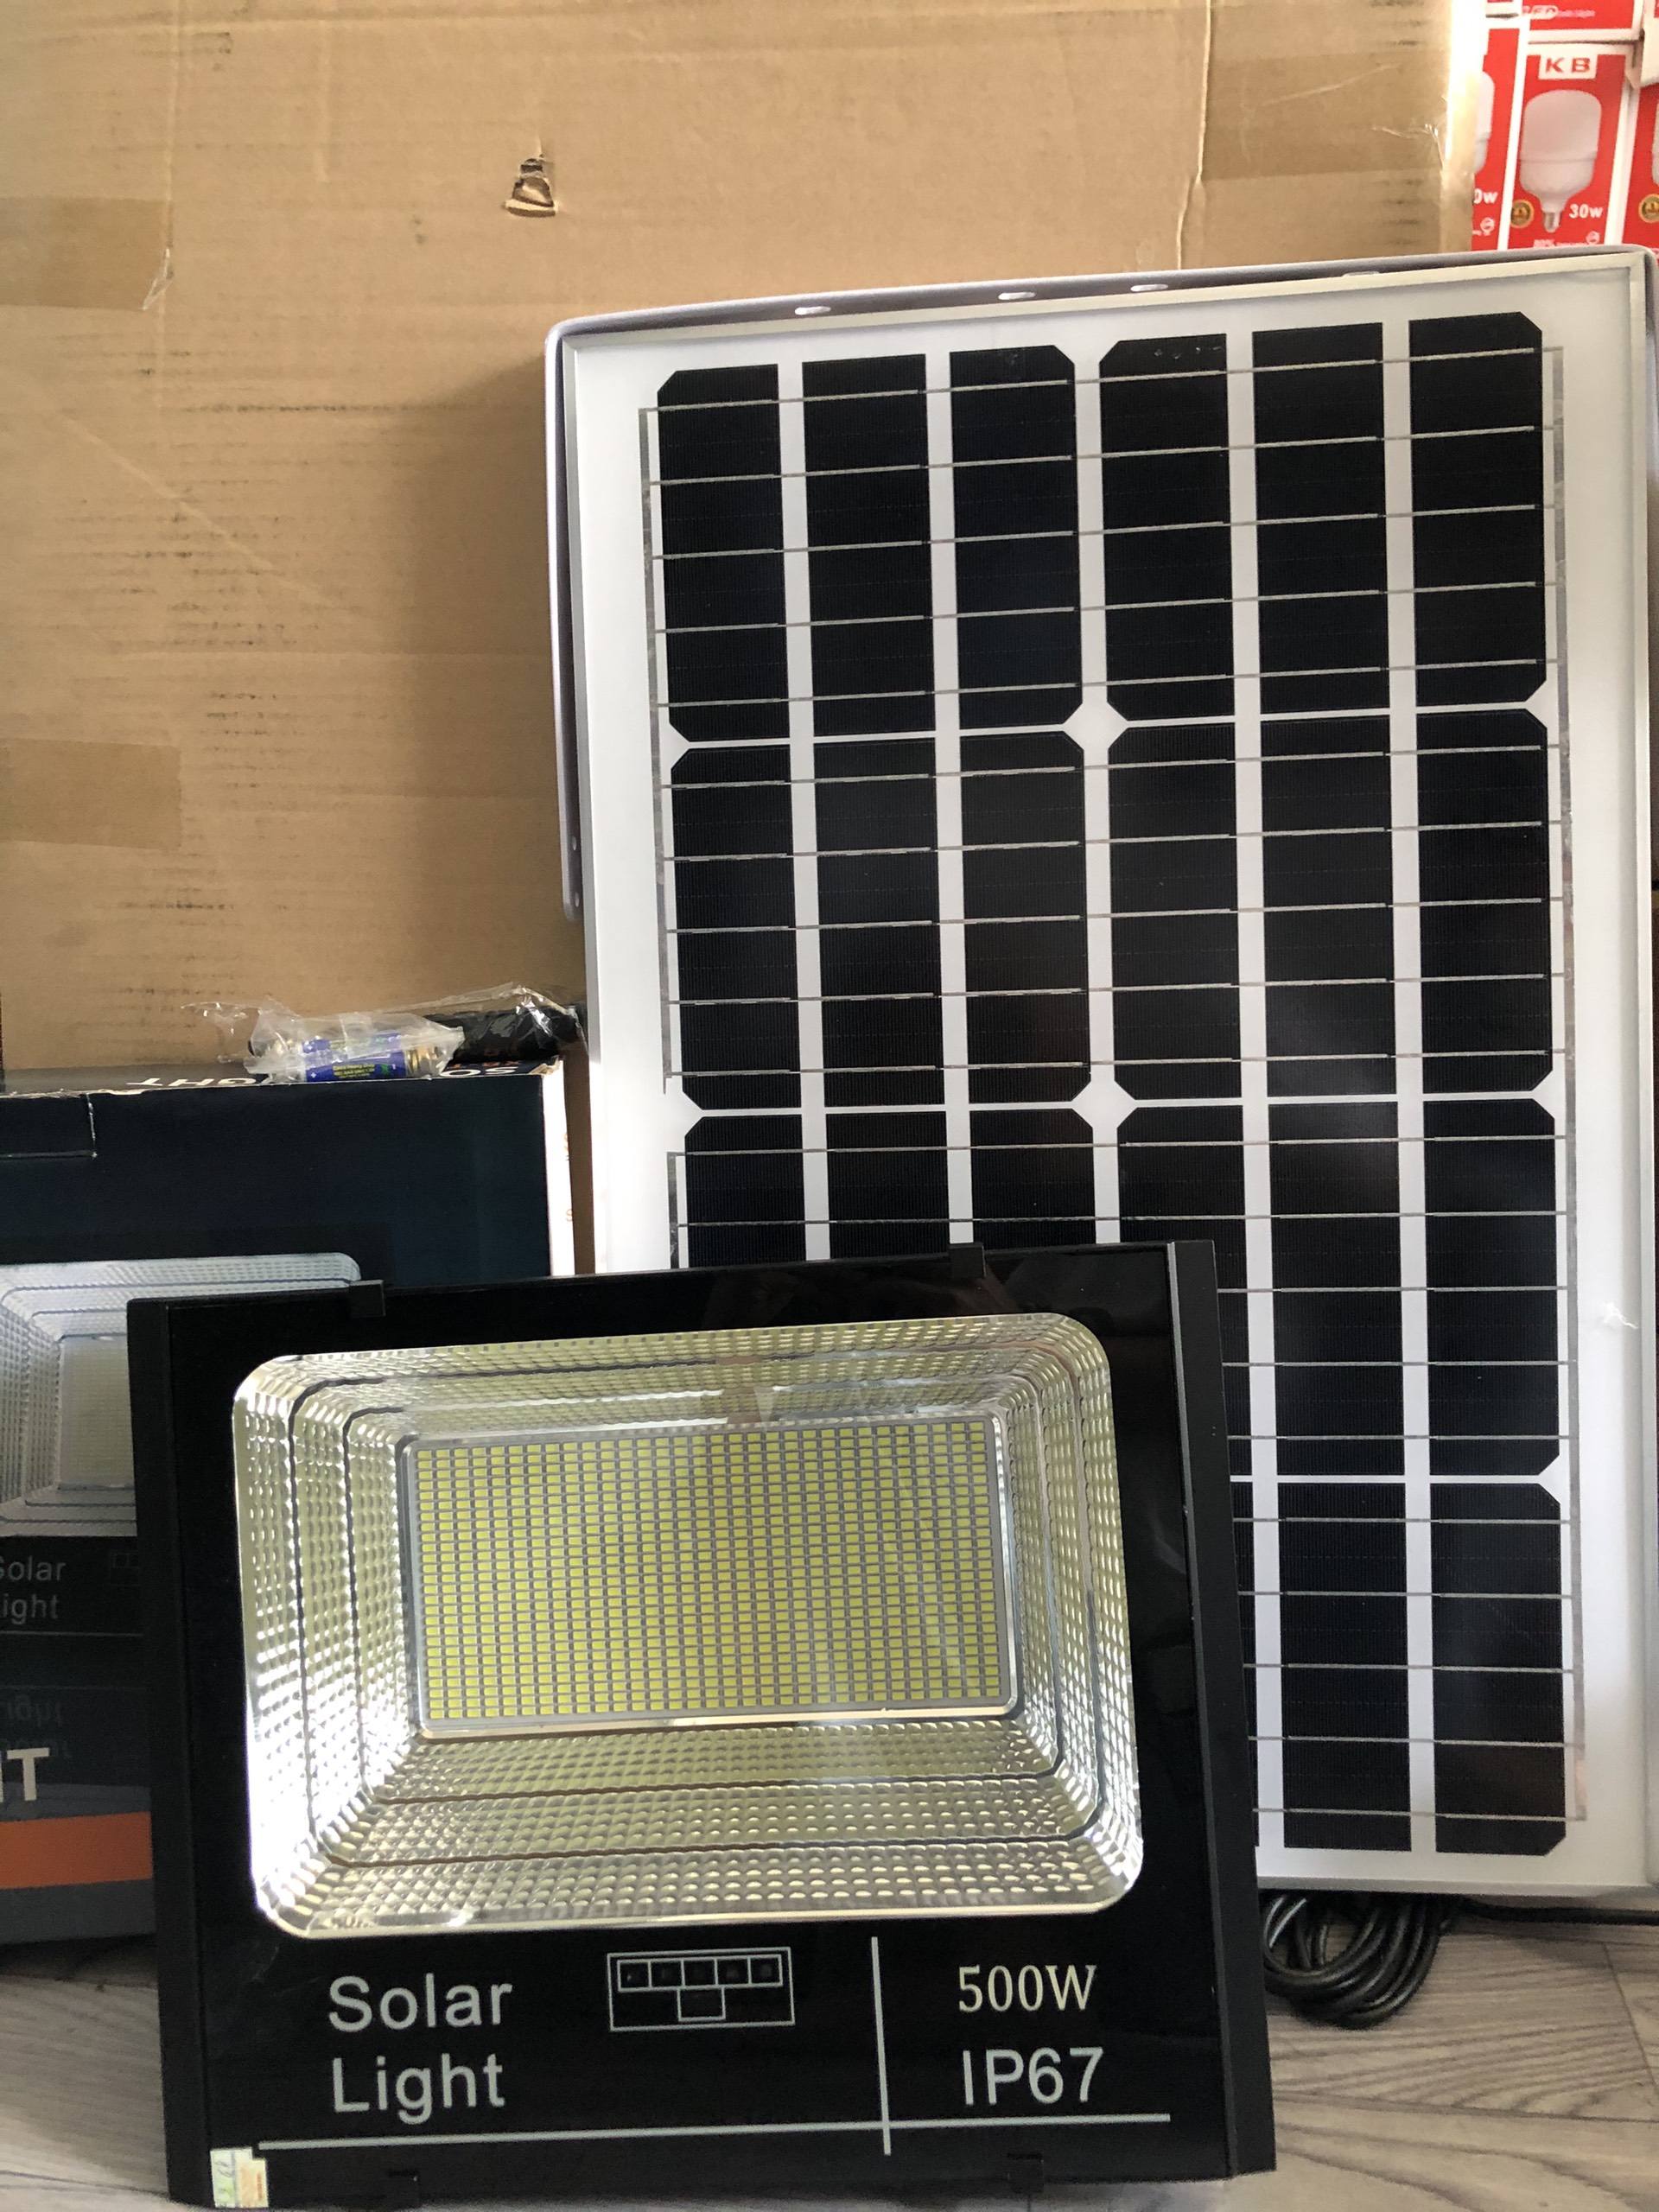 Đèn pha led năng lượng mặt trời  500W cao cấp siêu sáng  có báo pin chống nước tuyệt đối sử dụng trong nhà và ngoài sân đều tốt bảo hành sản phẩm 2 năm